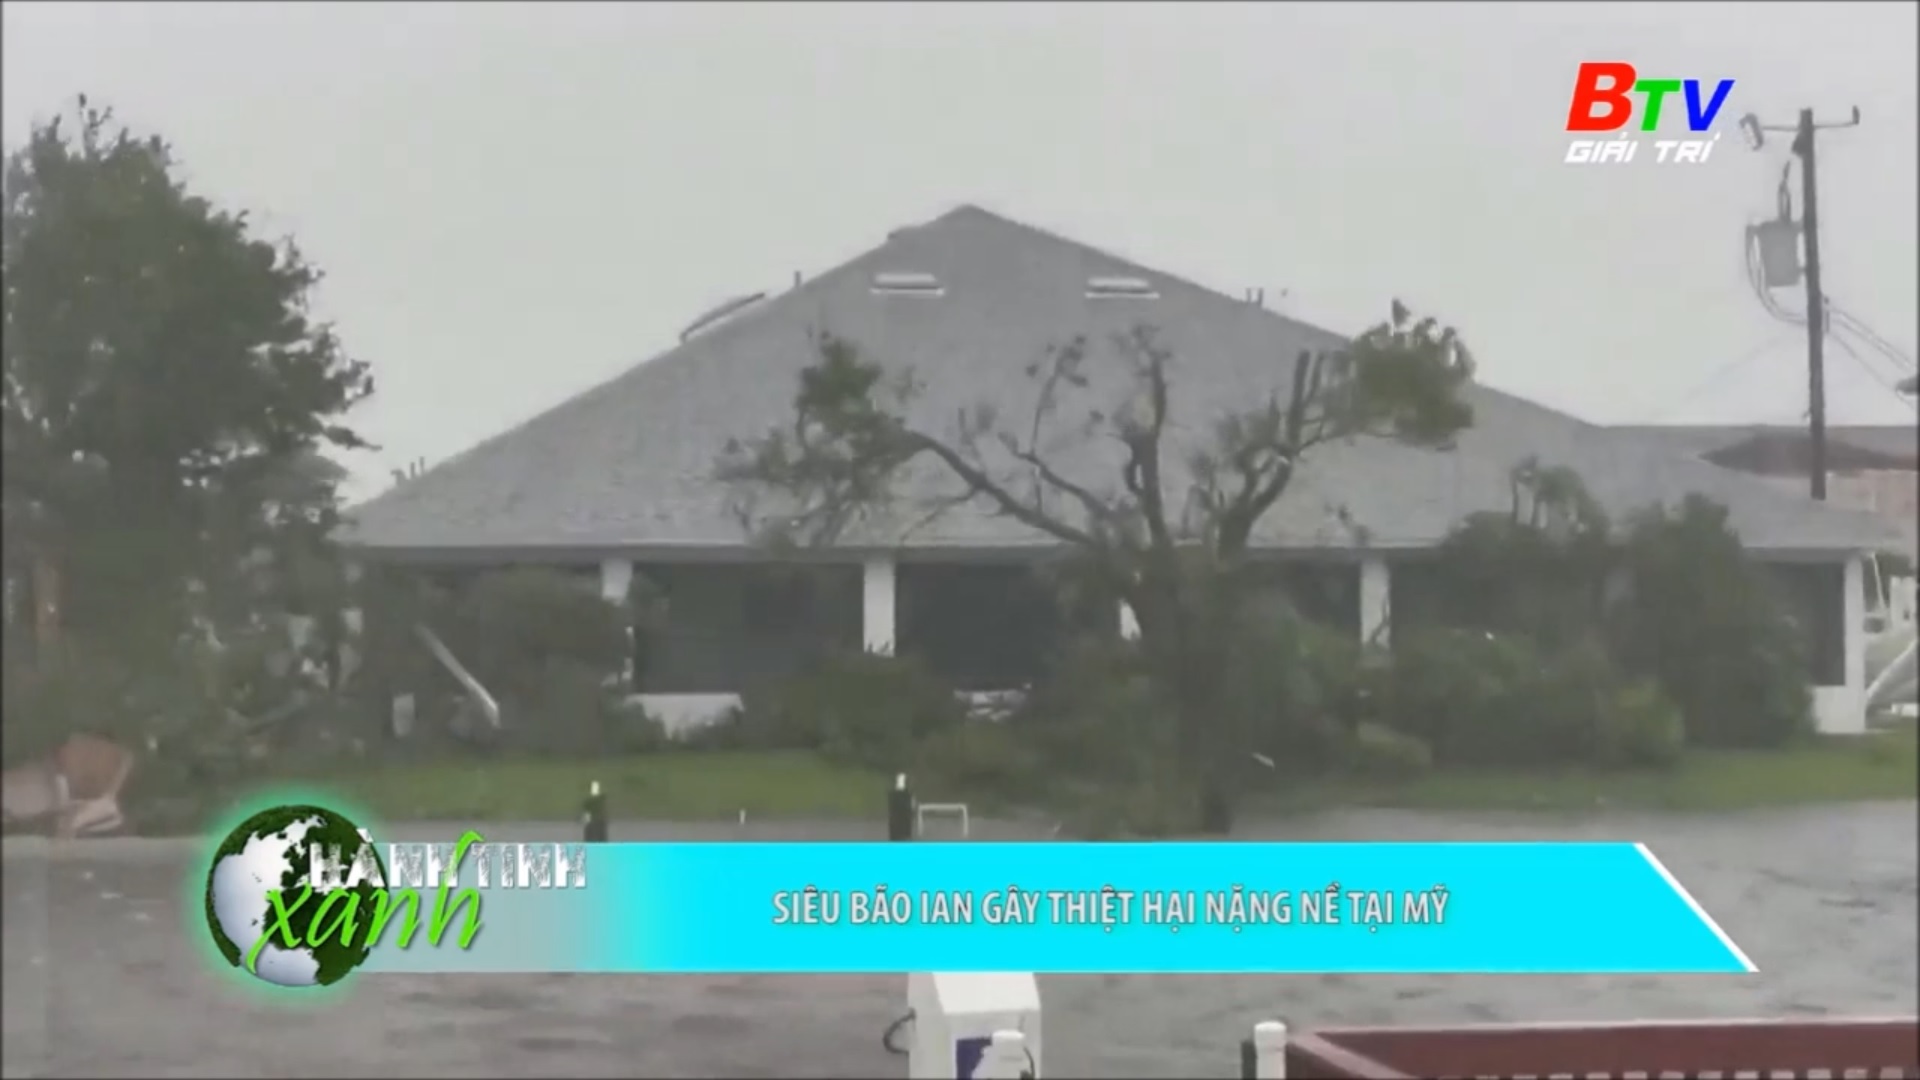 Siêu bão Ian gây thiệt hại nặng nề tại Mỹ